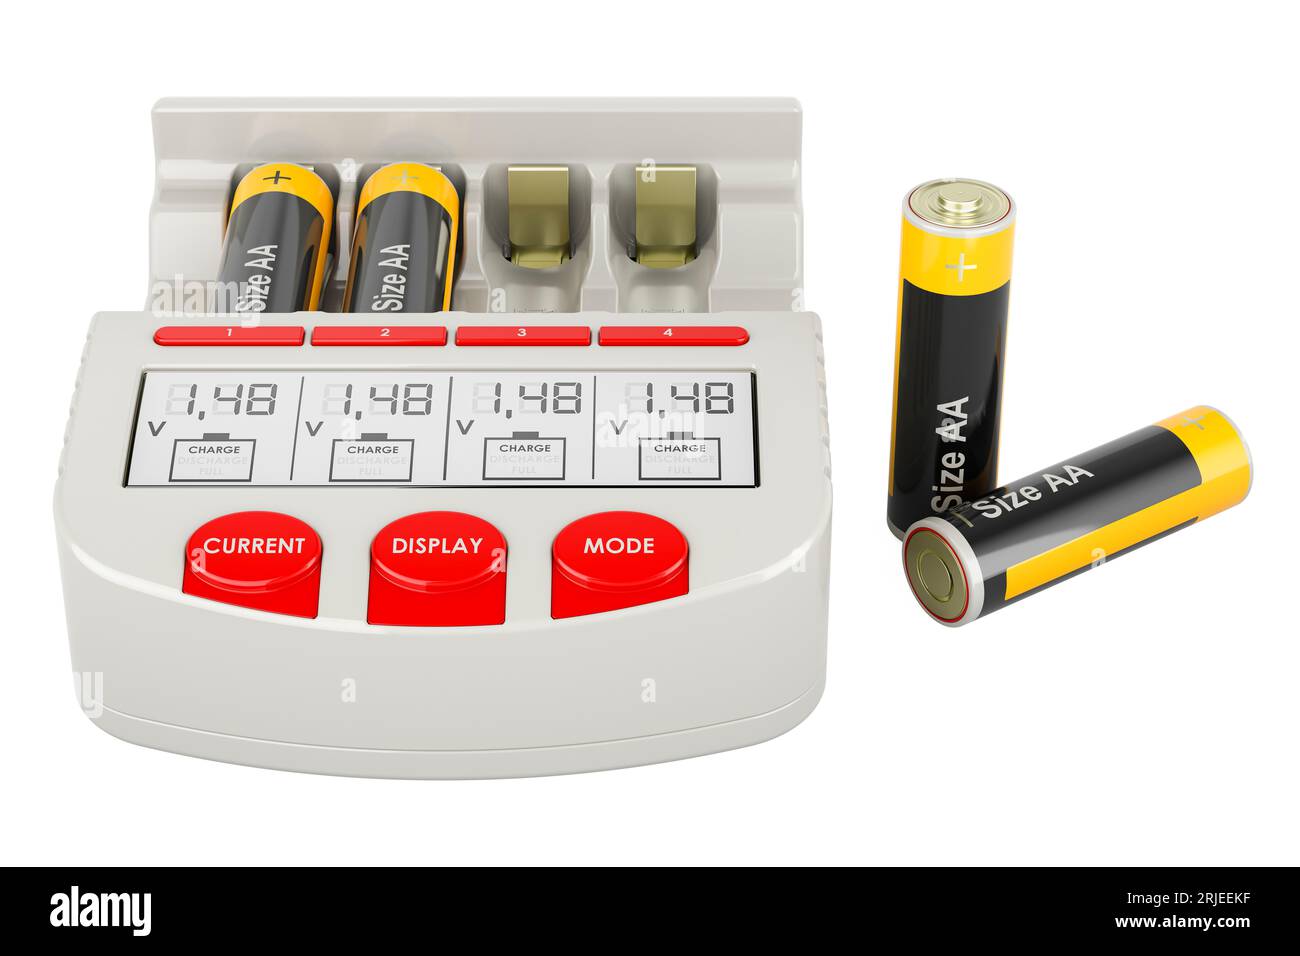 AA AAA chargeur de batterie pour batteries rechargeables, rendu 3D isolé sur fond blanc Banque D'Images